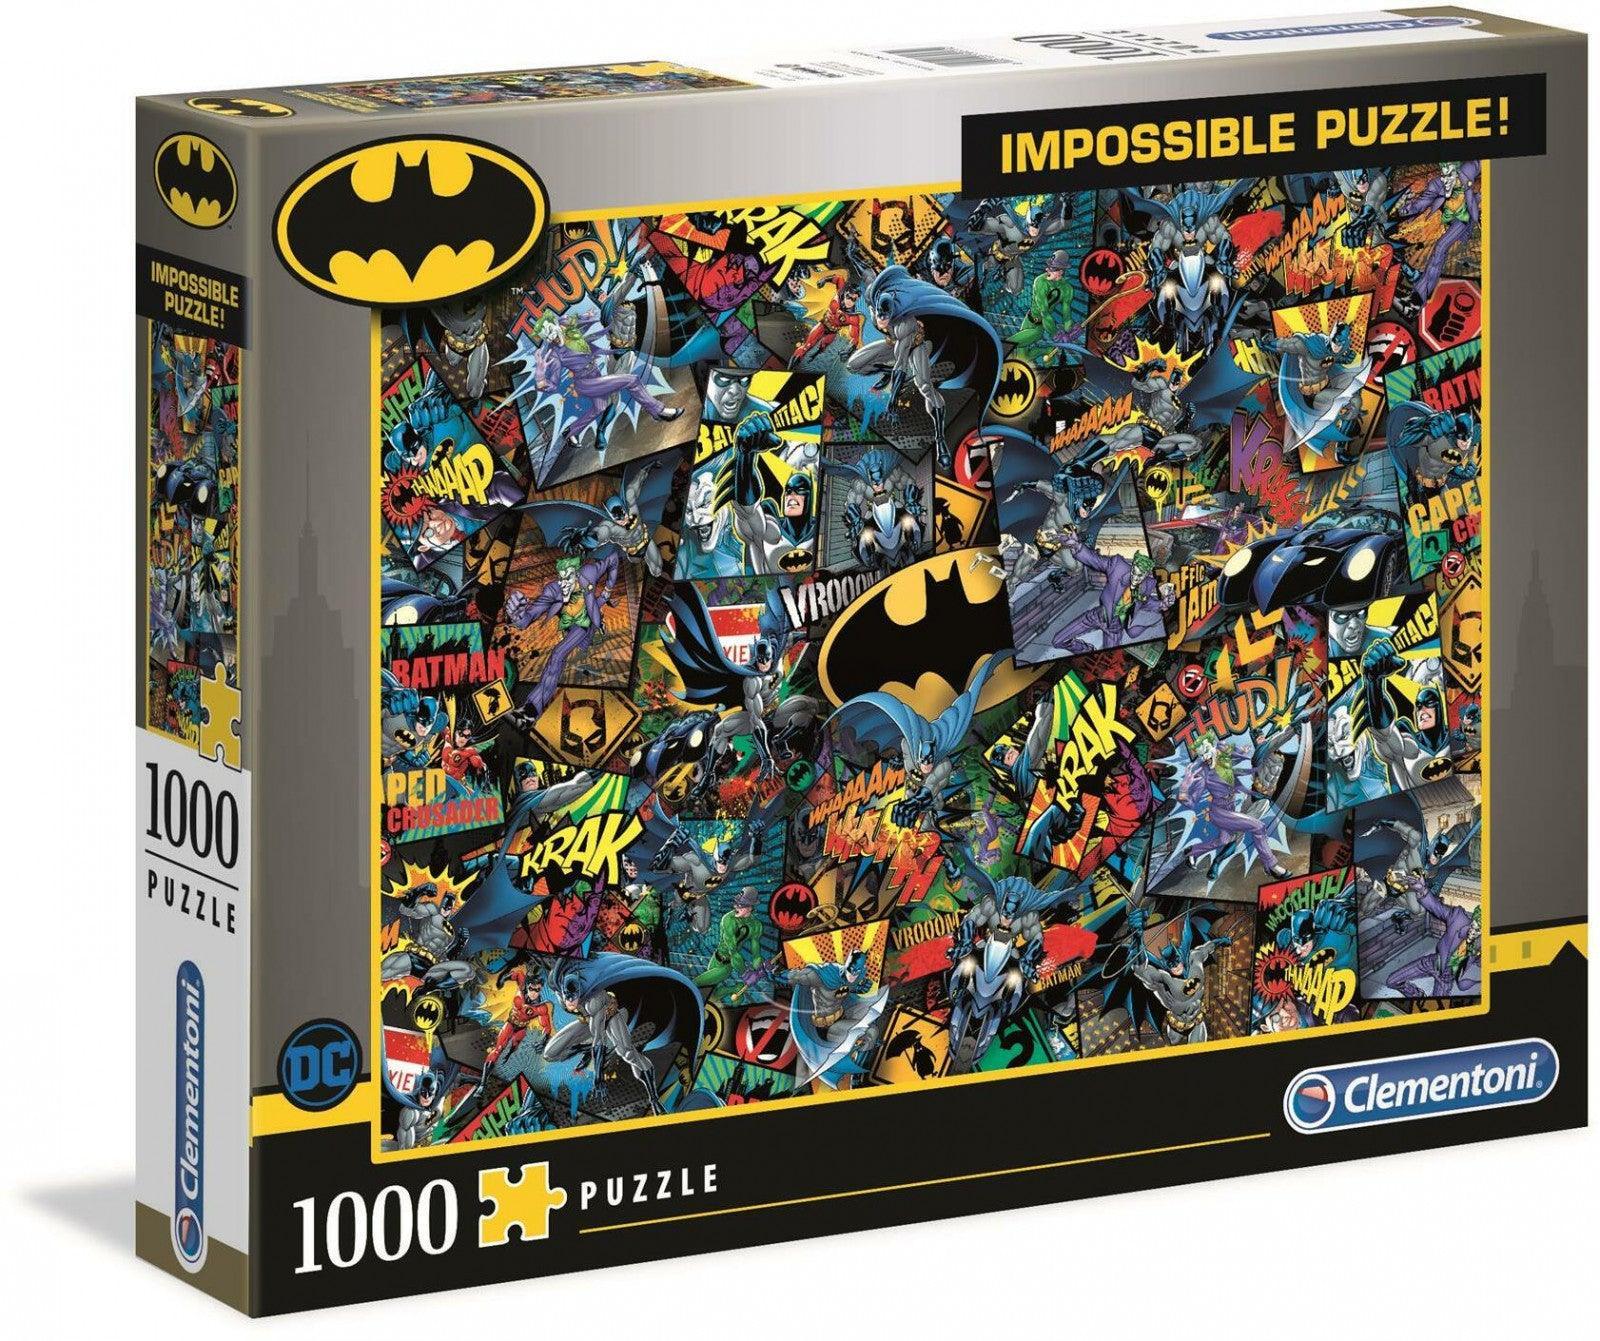 Clementoni Puzzle Batman Impossible Puzzle 1,000 pieces  Clementoni Titan Pop Culture